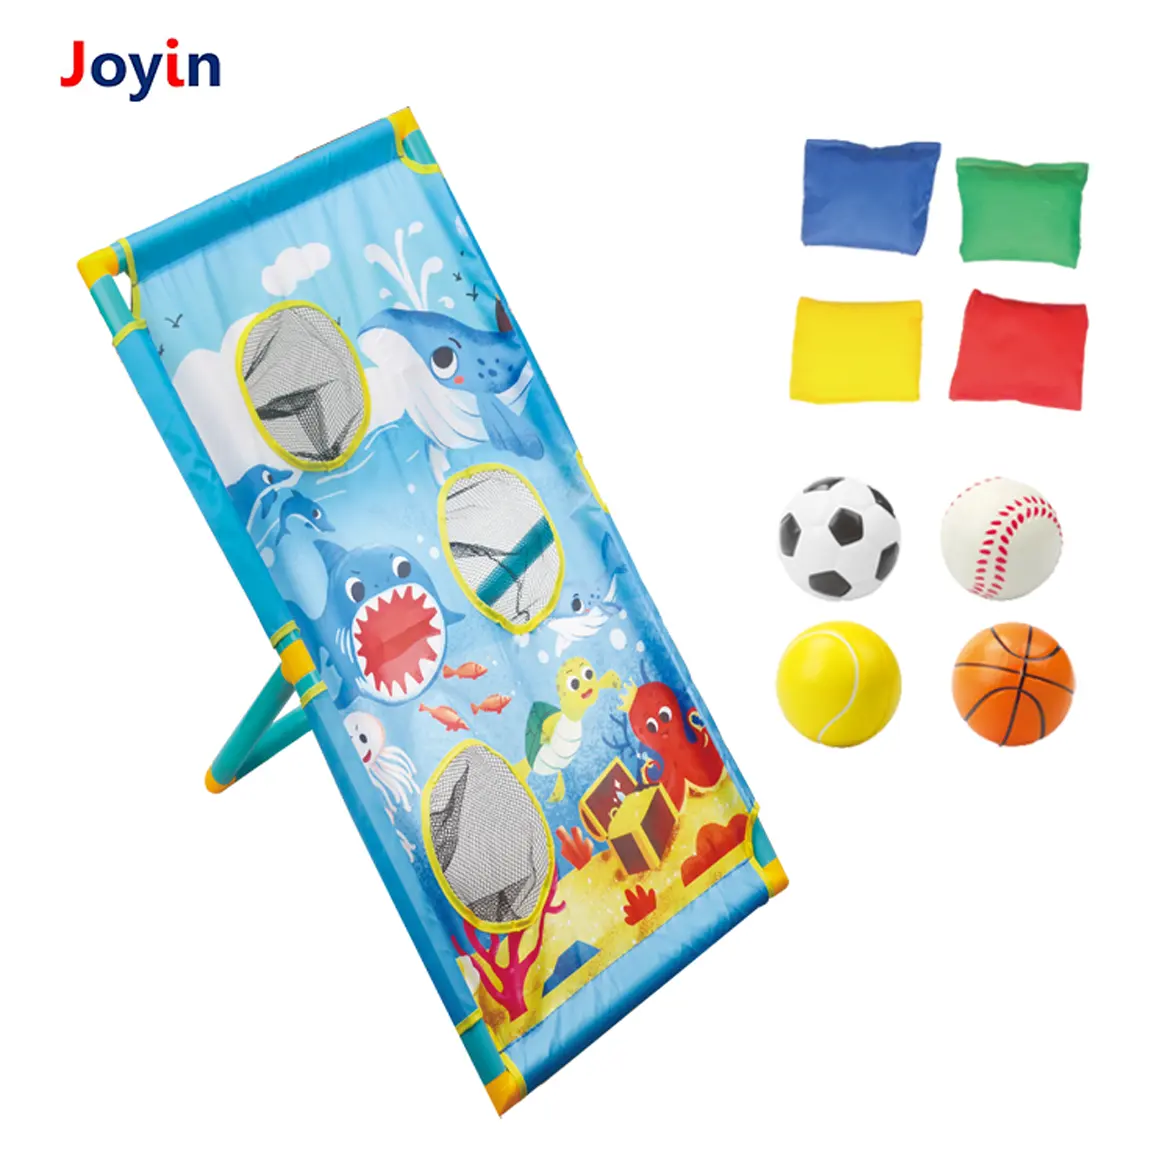 Tieren-Sandsack-Wirf-Spiel Toss Bohne-Tasche mit 4 Sandsäcken, 4 Kunststoffkugeln für Kinder Familienveranstaltungen Team-Tower-Tam-Spielzeug